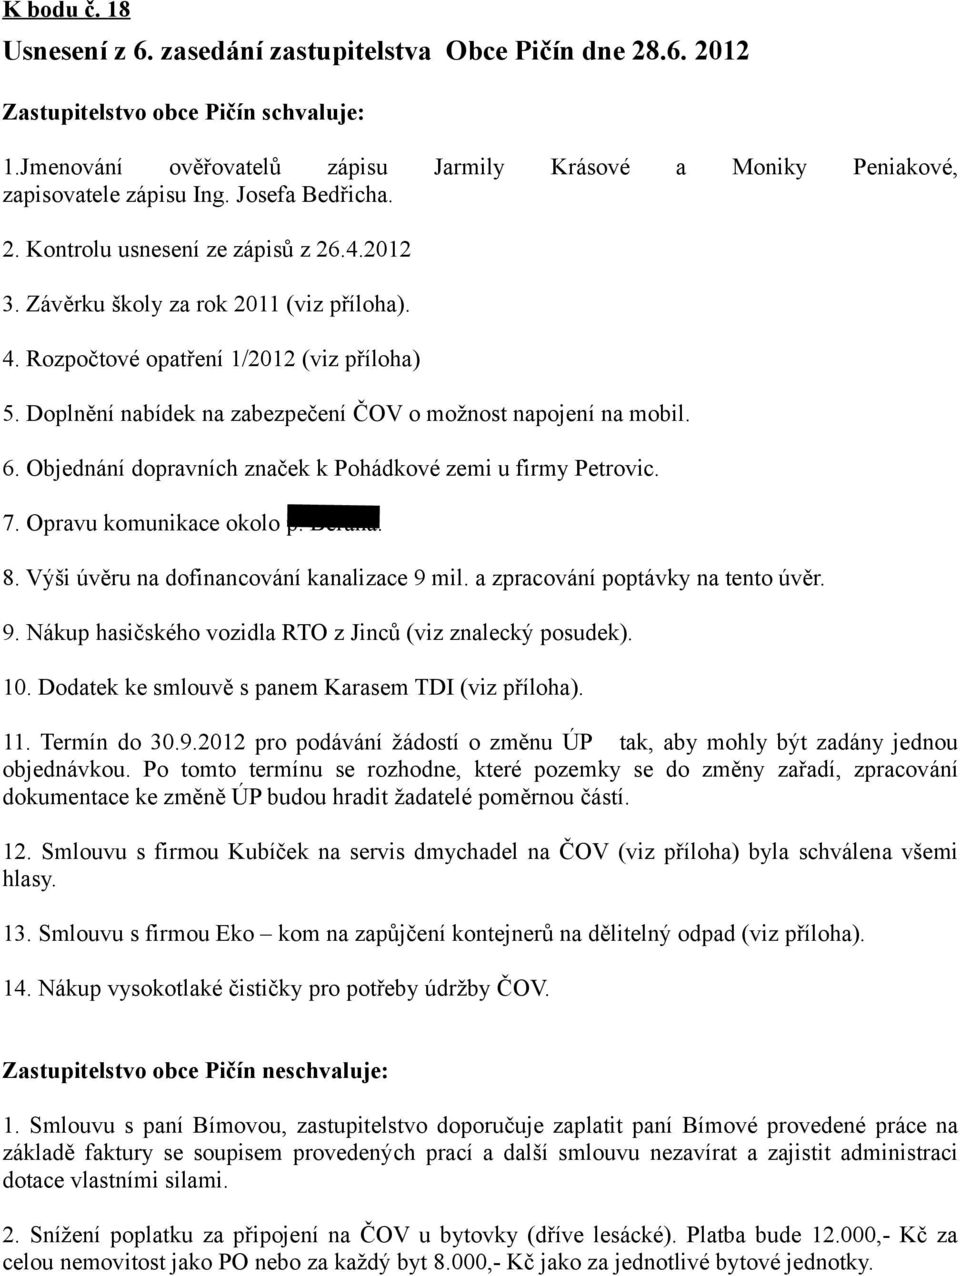 Rozpočtové opatření 1/2012 (viz příloha) 5. Doplnění nabídek na zabezpečení ČOV o možnost napojení na mobil. 6. Objednání dopravních značek k Pohádkové zemi u firmy Petrovic. 7.